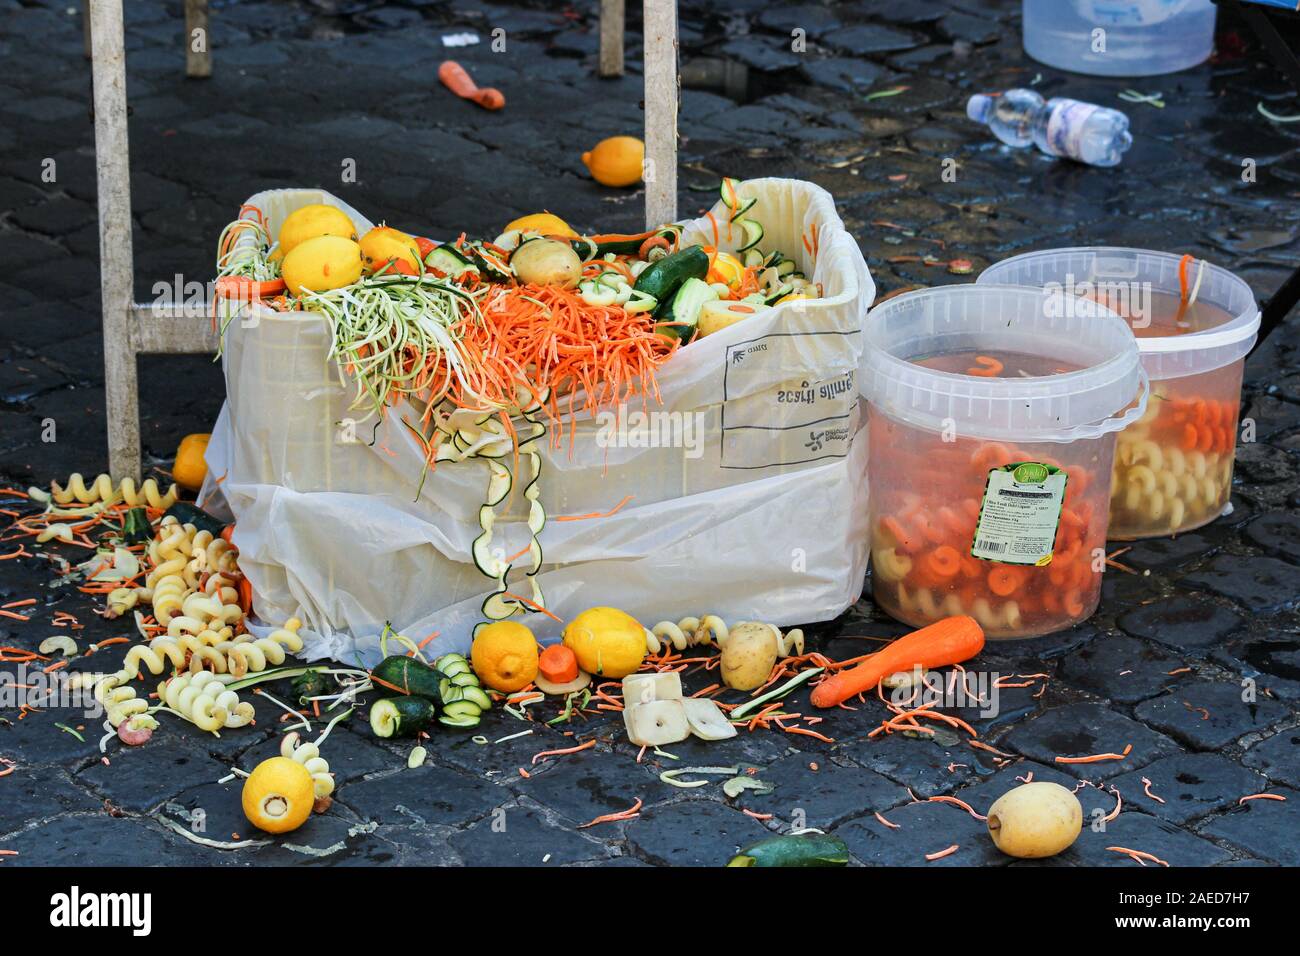 Market vendor's sample left-over waste after market hours Stock Photo